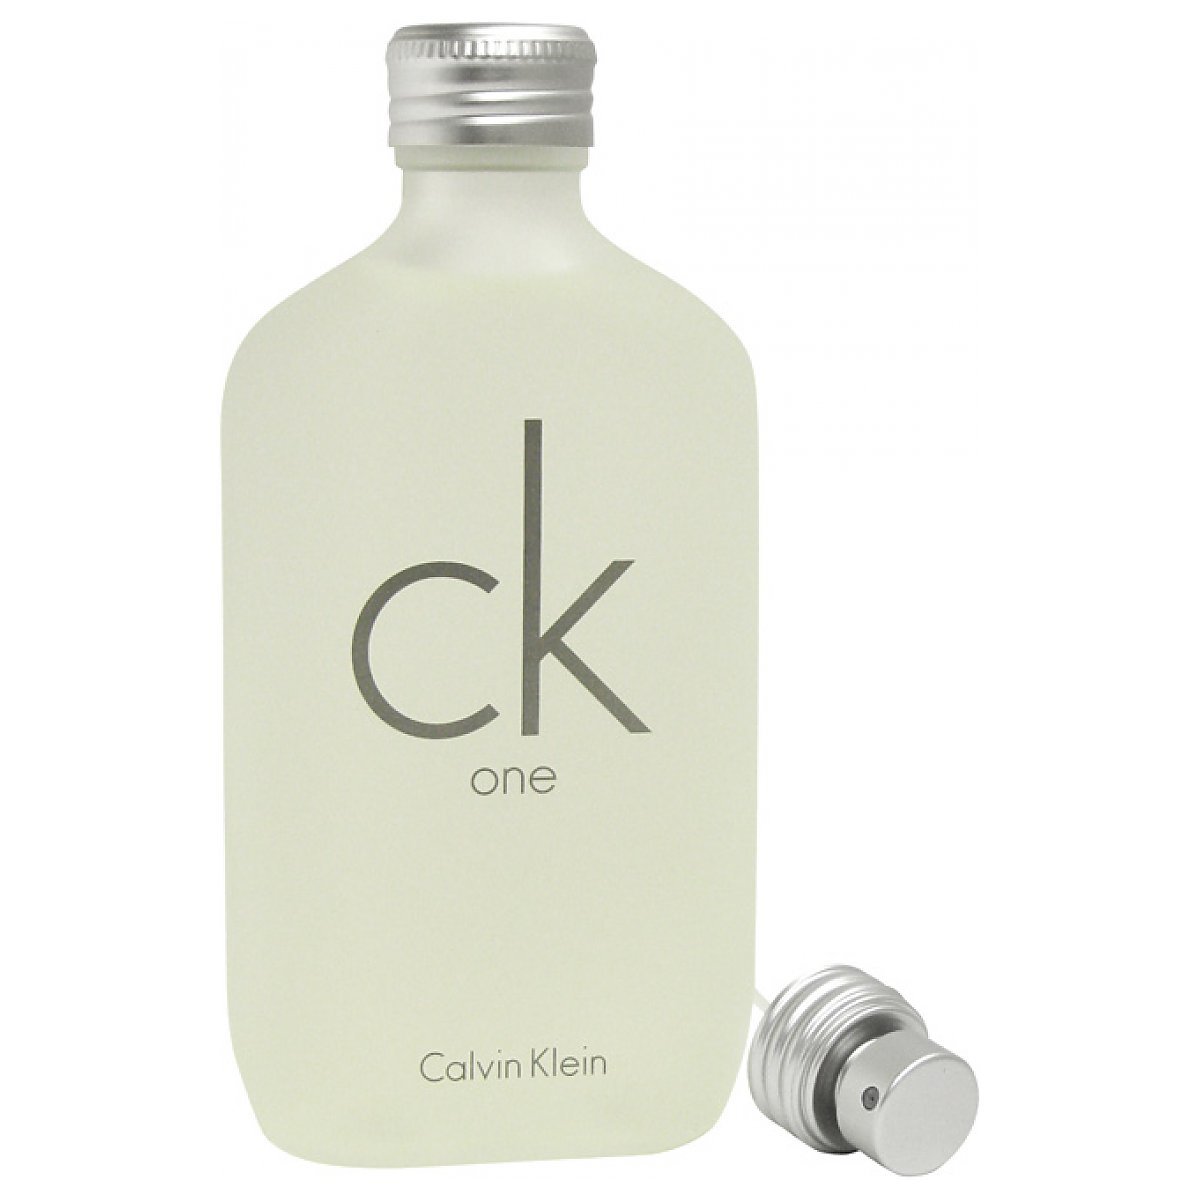 Calvin Klein CK One Zestaw upominkowy EDT 200ml + EDT 15ml + balsam ...